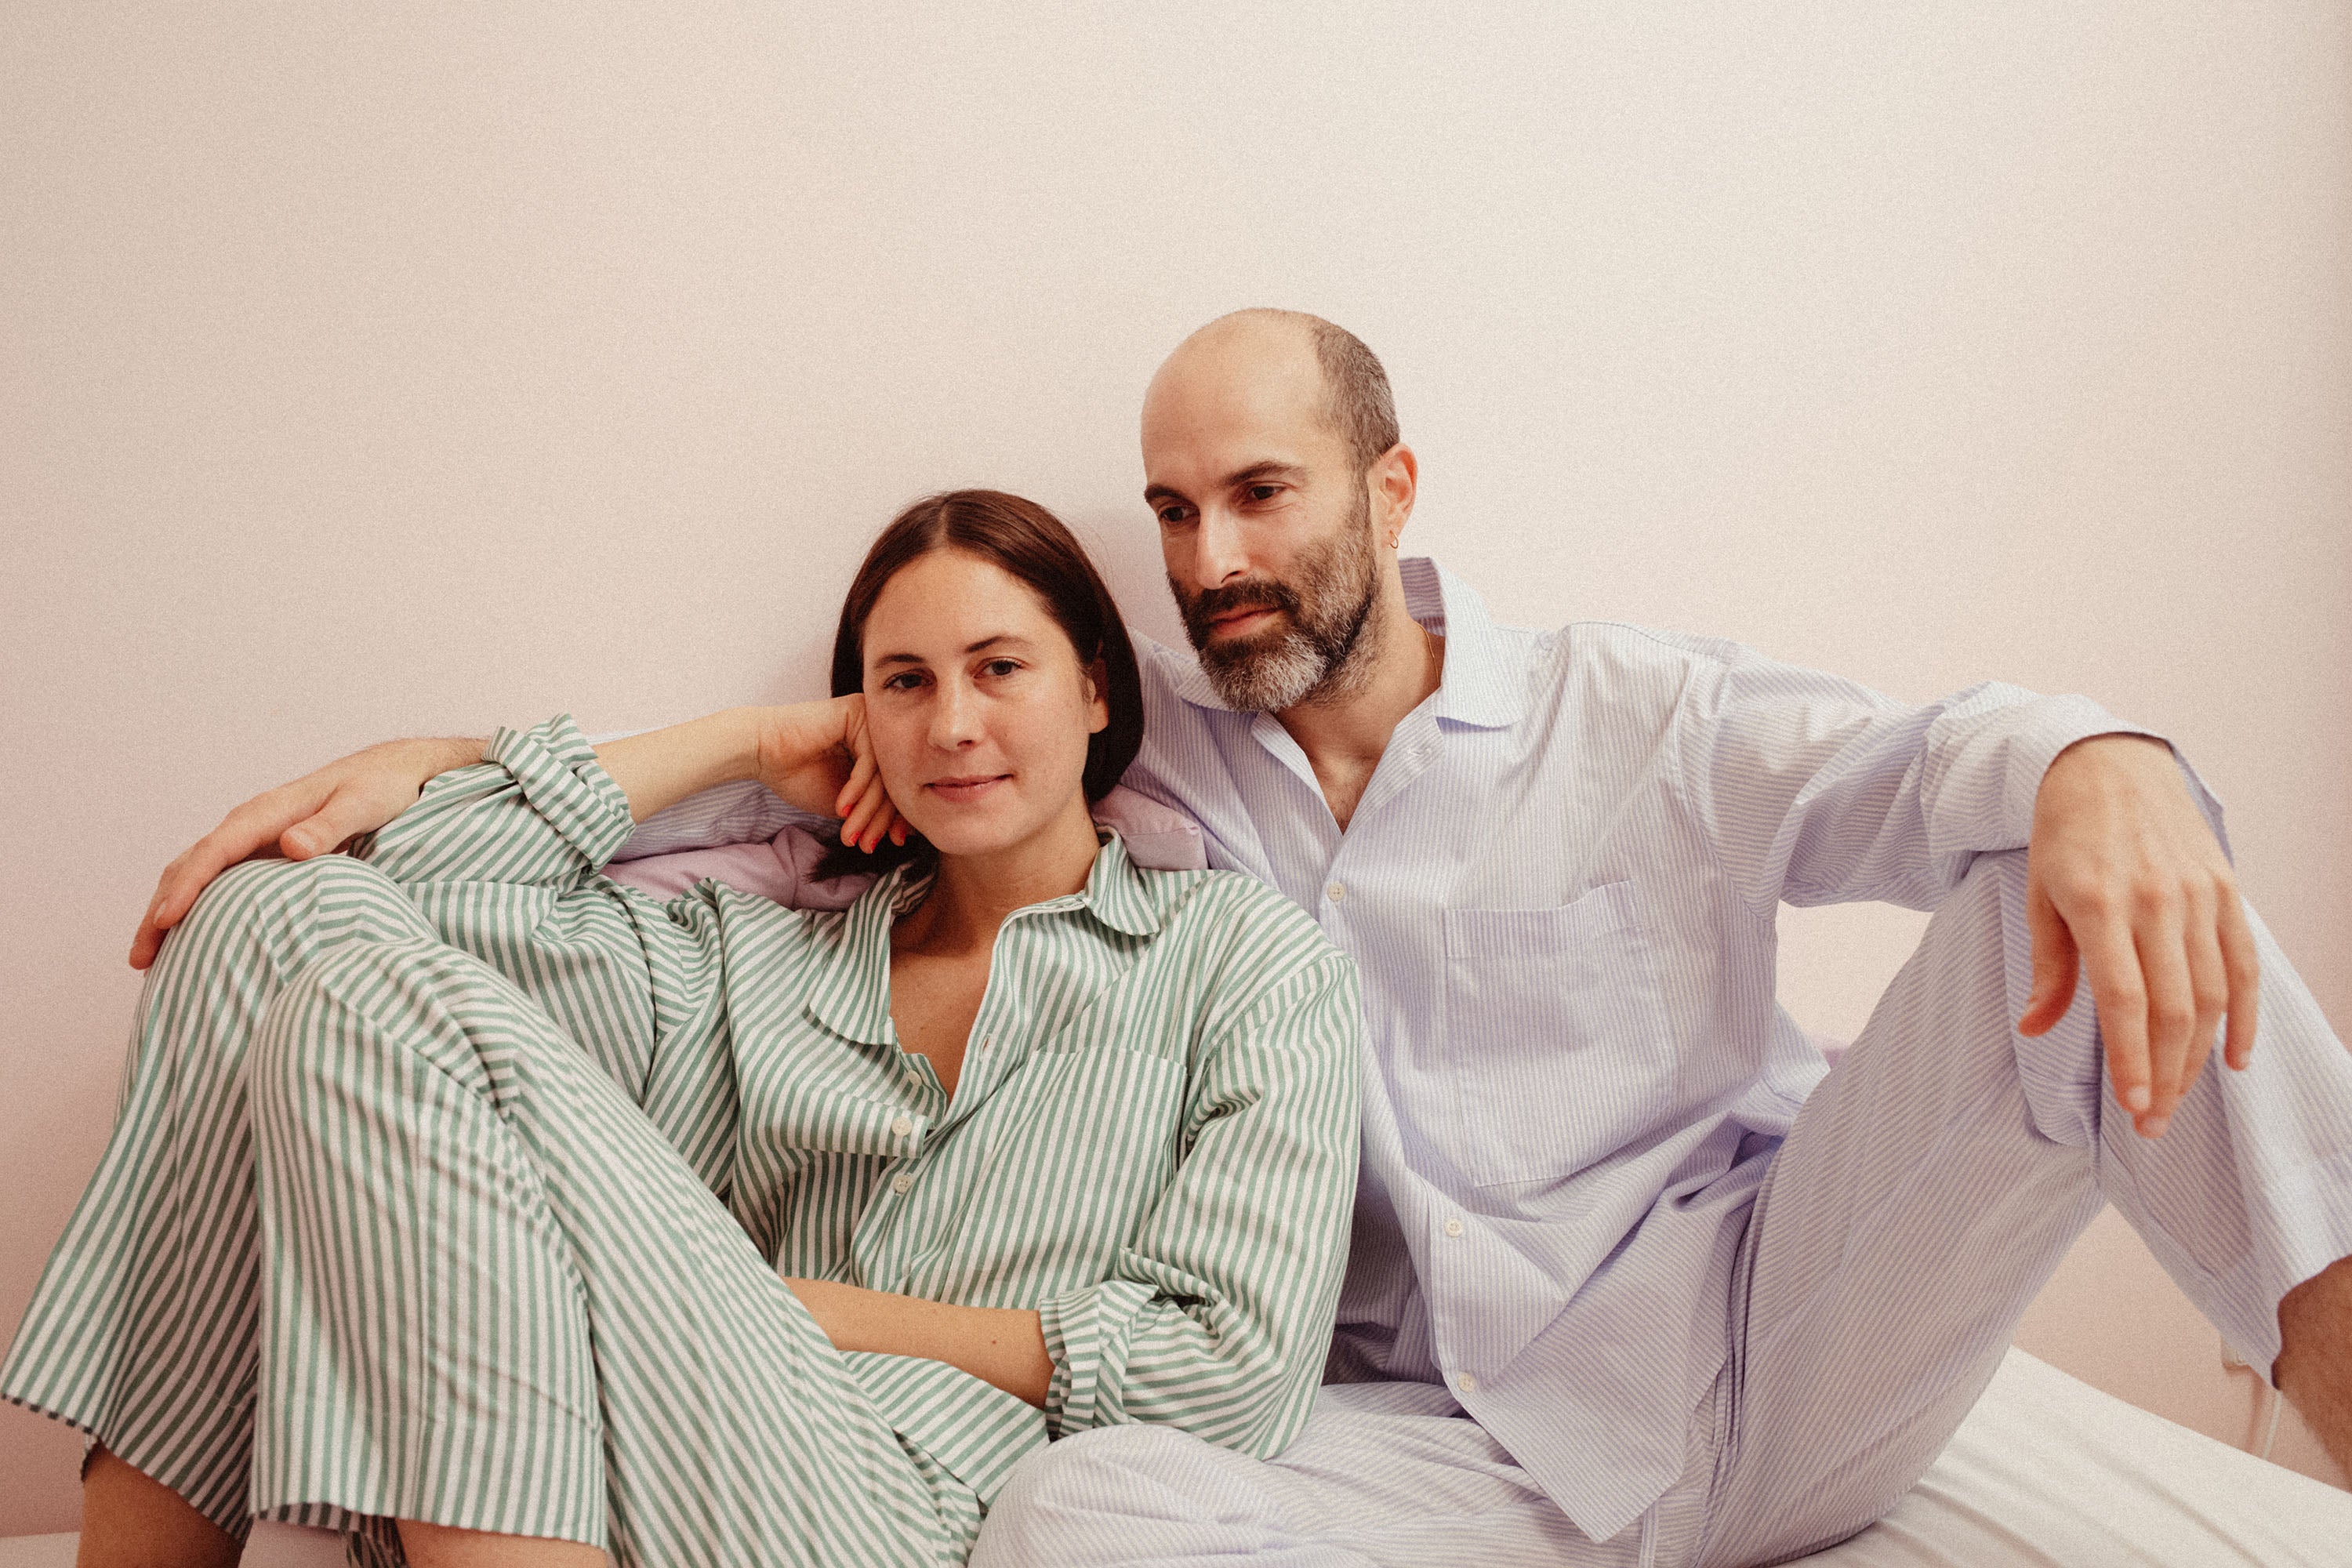 Tipps zum Schlaf verbessern mit einem bequemen Pyjama